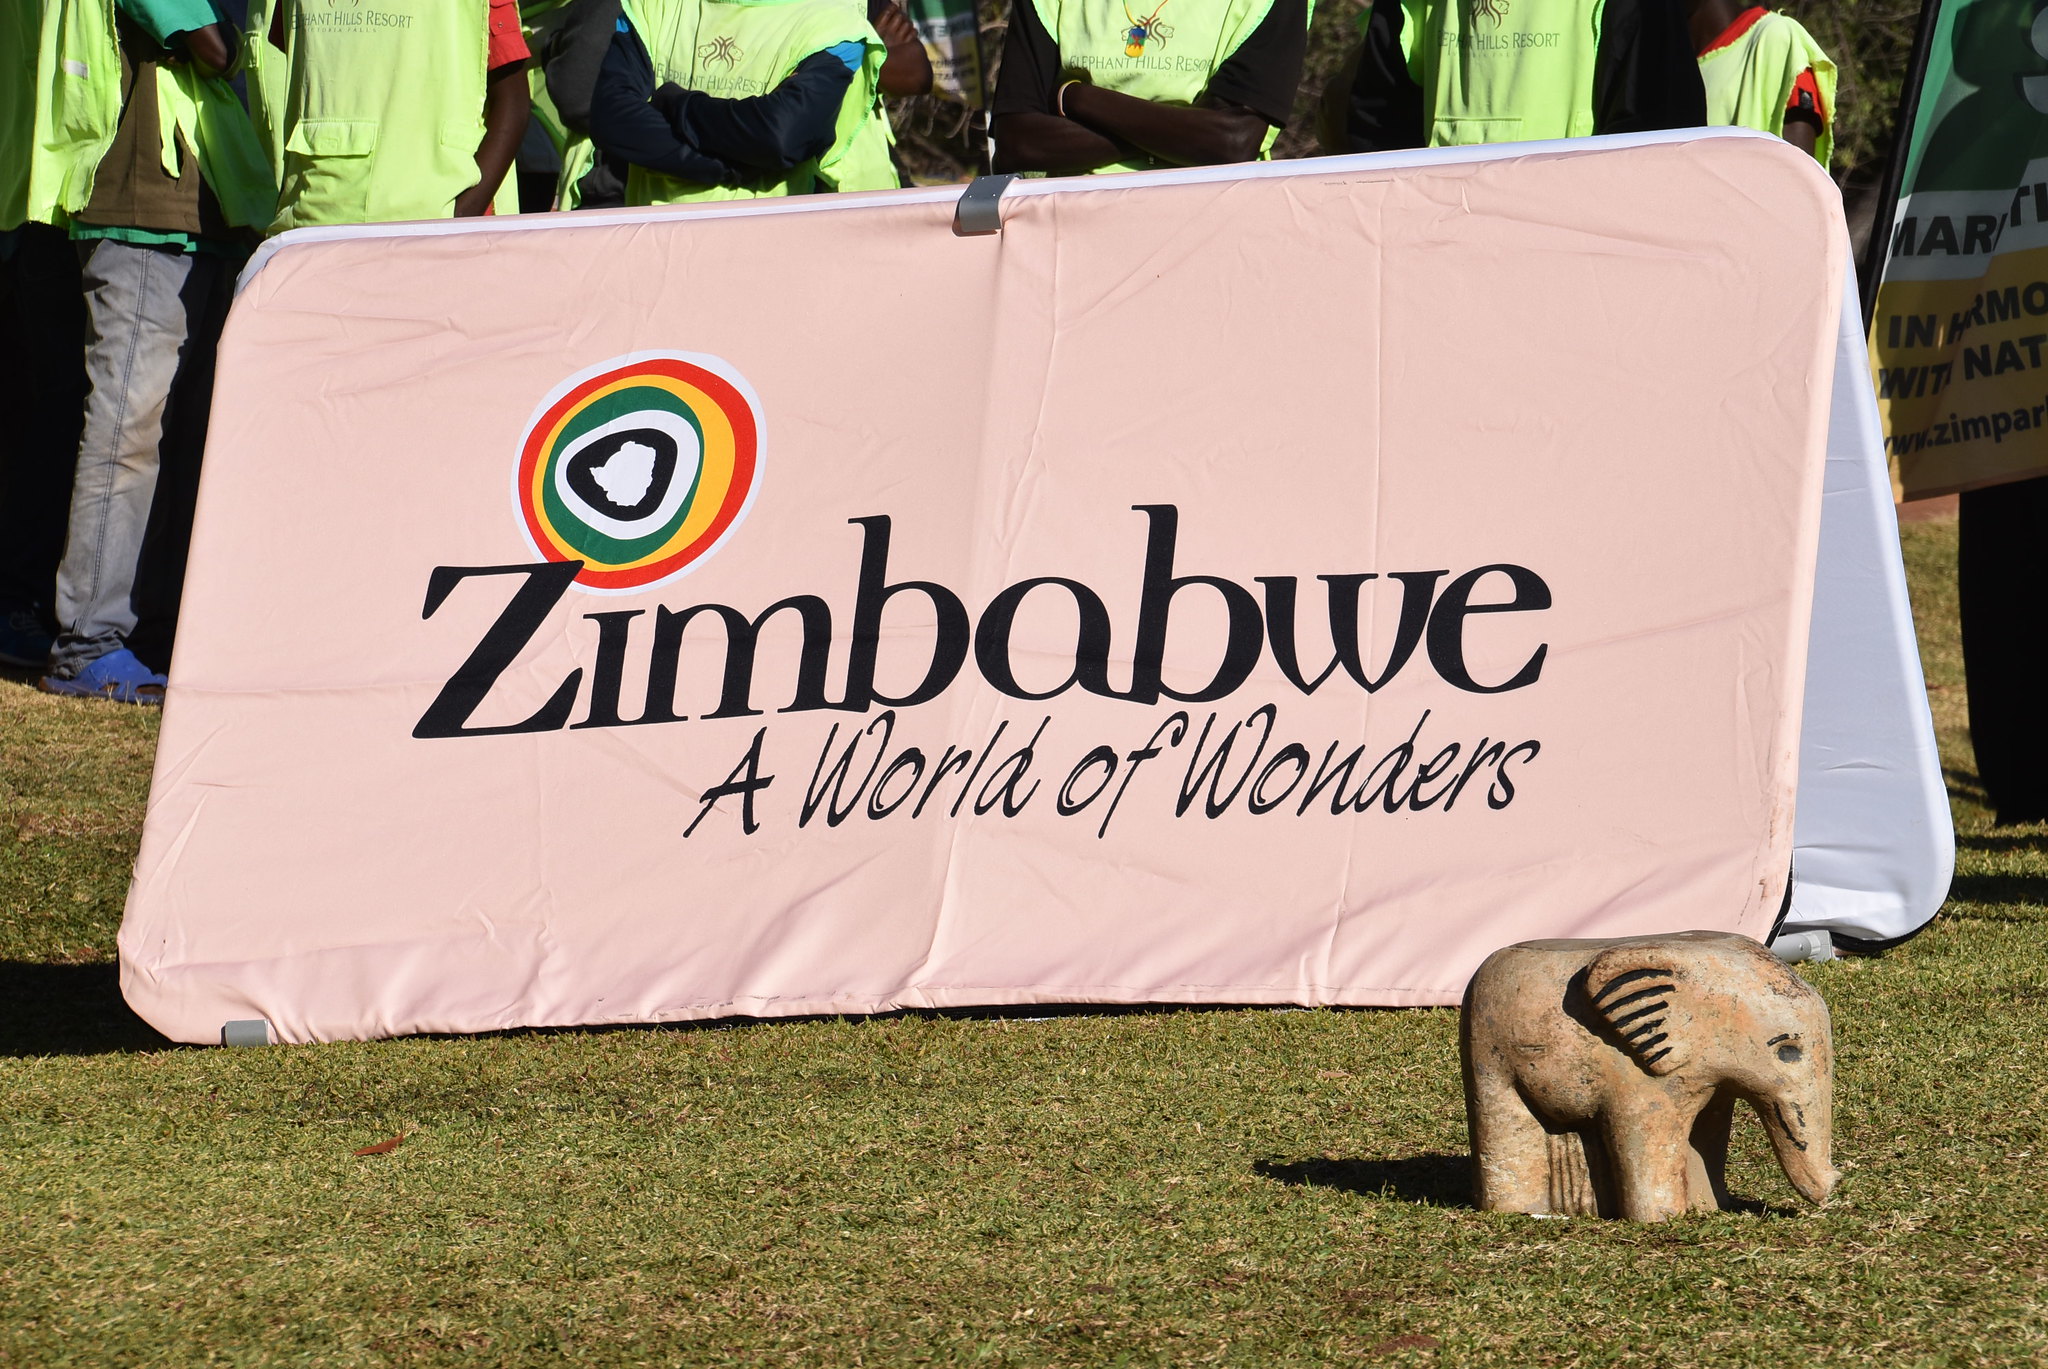 zimbabwe tourism authority board